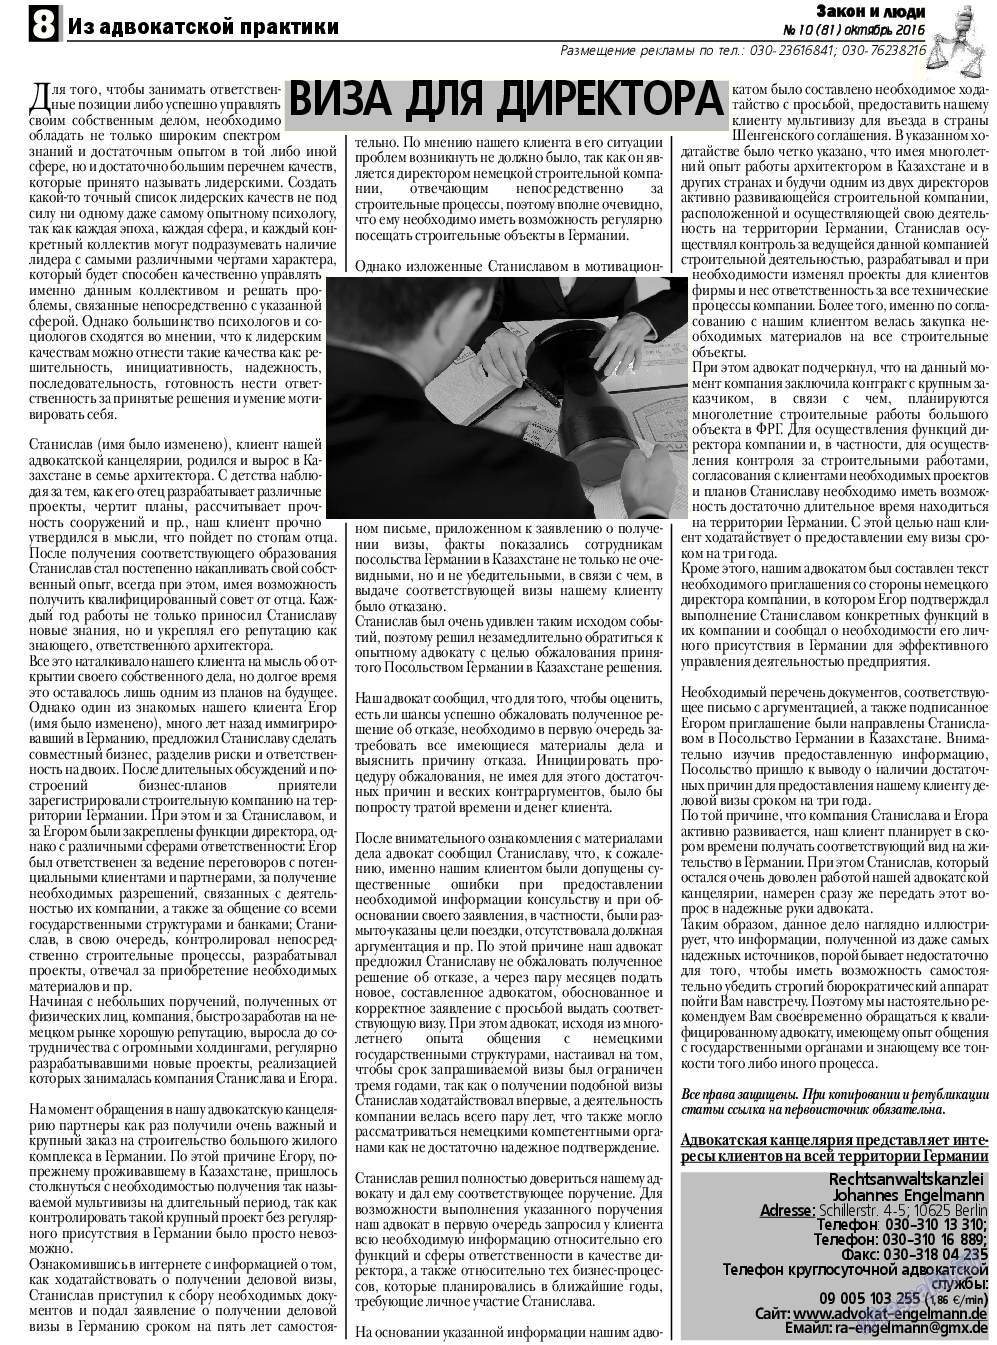 Закон и люди, газета. 2016 №10 стр.8